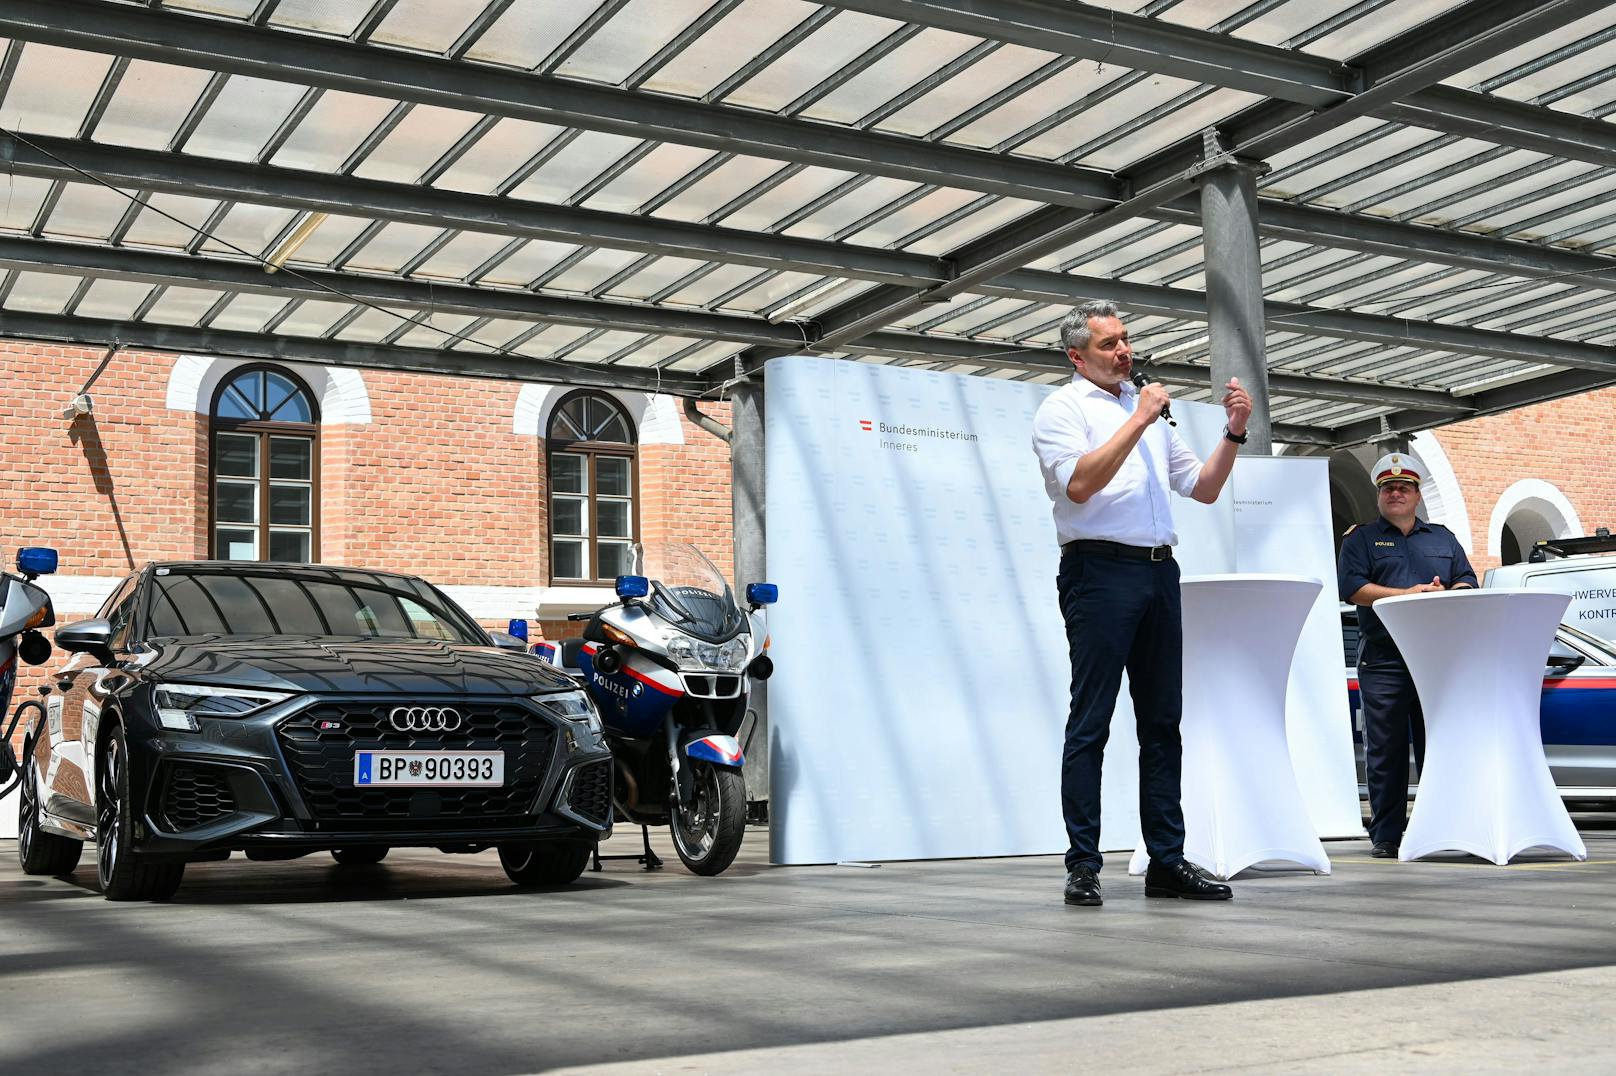 Die Polizei tritt zukünftig unter anderem in einem Audi S3, Golf GTI oder Seat Cupra aufs Gas.